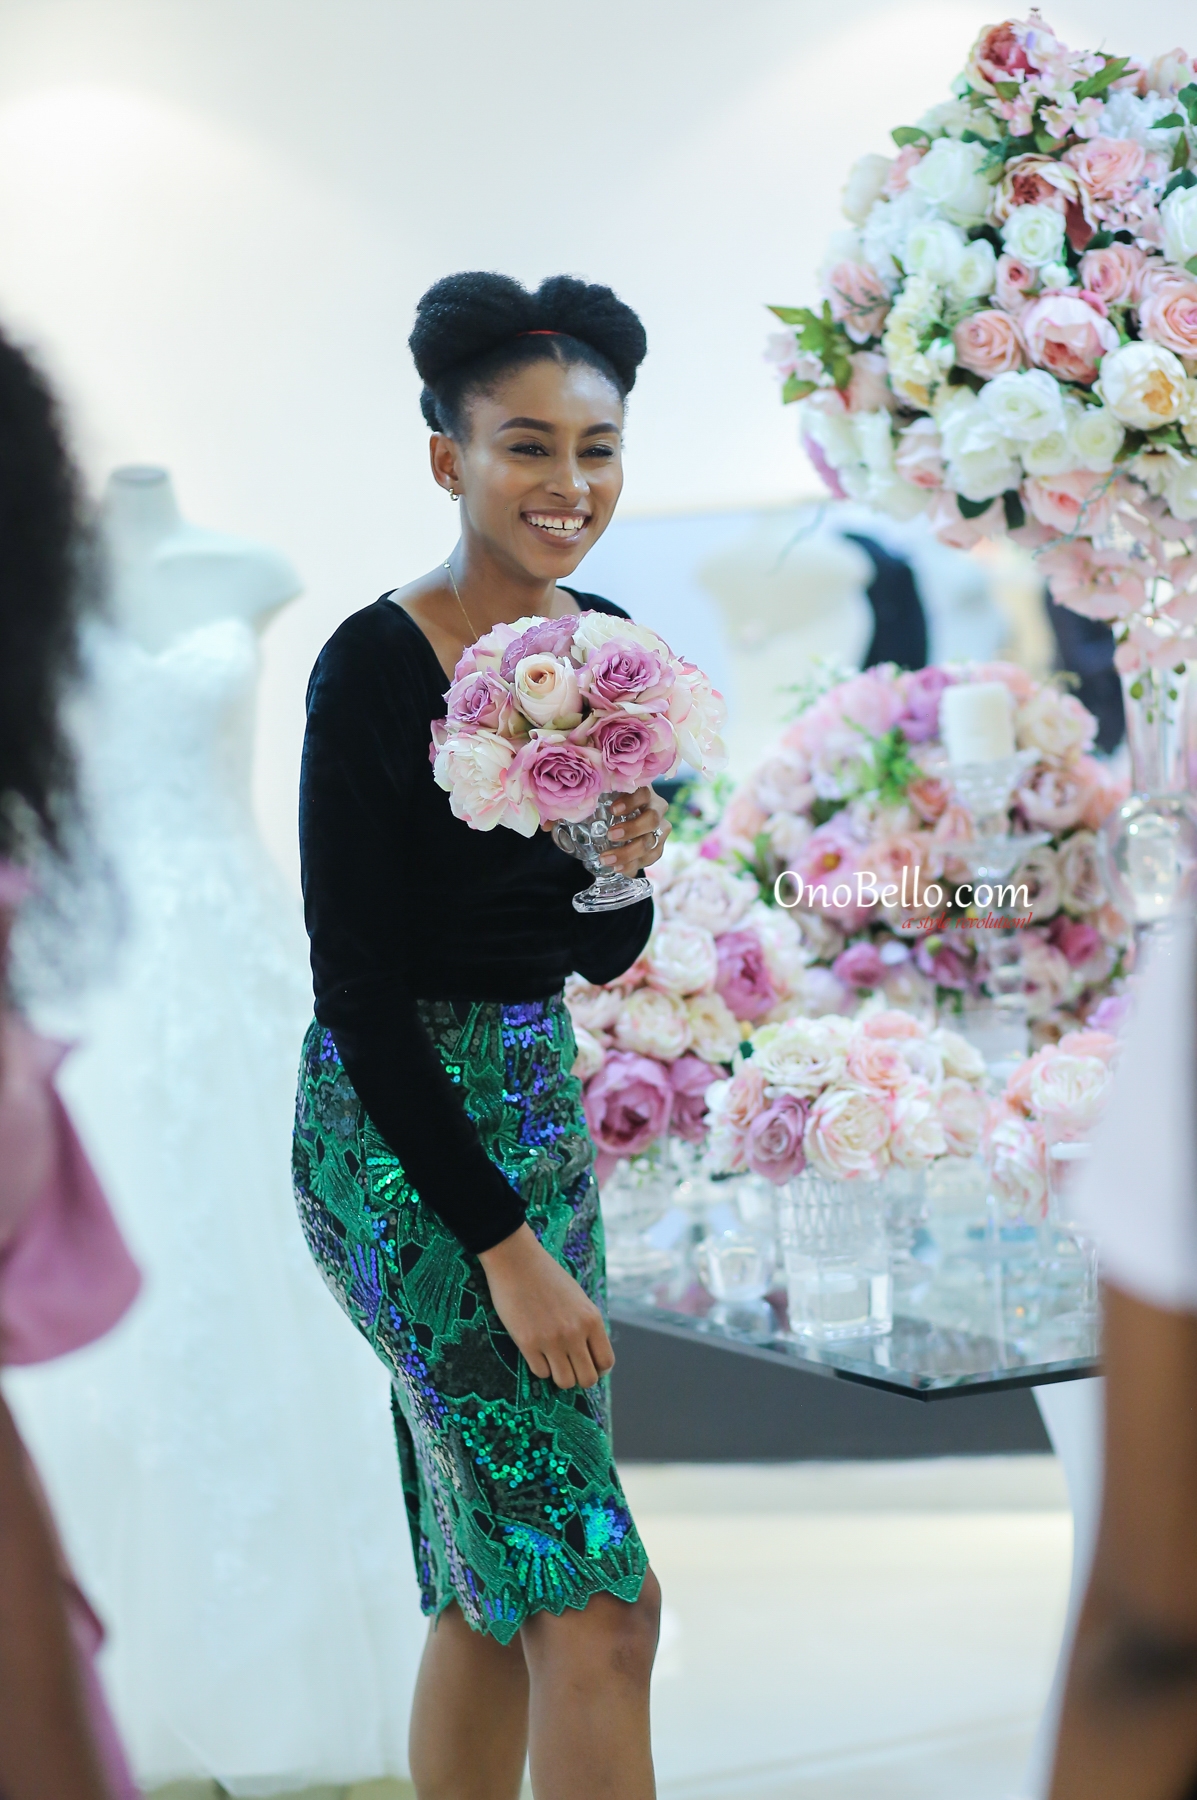 Mai Atafo, Ini-Dima Okojie, More Attend Lagos Bridal Fashion Week 2018 Press Cocktail